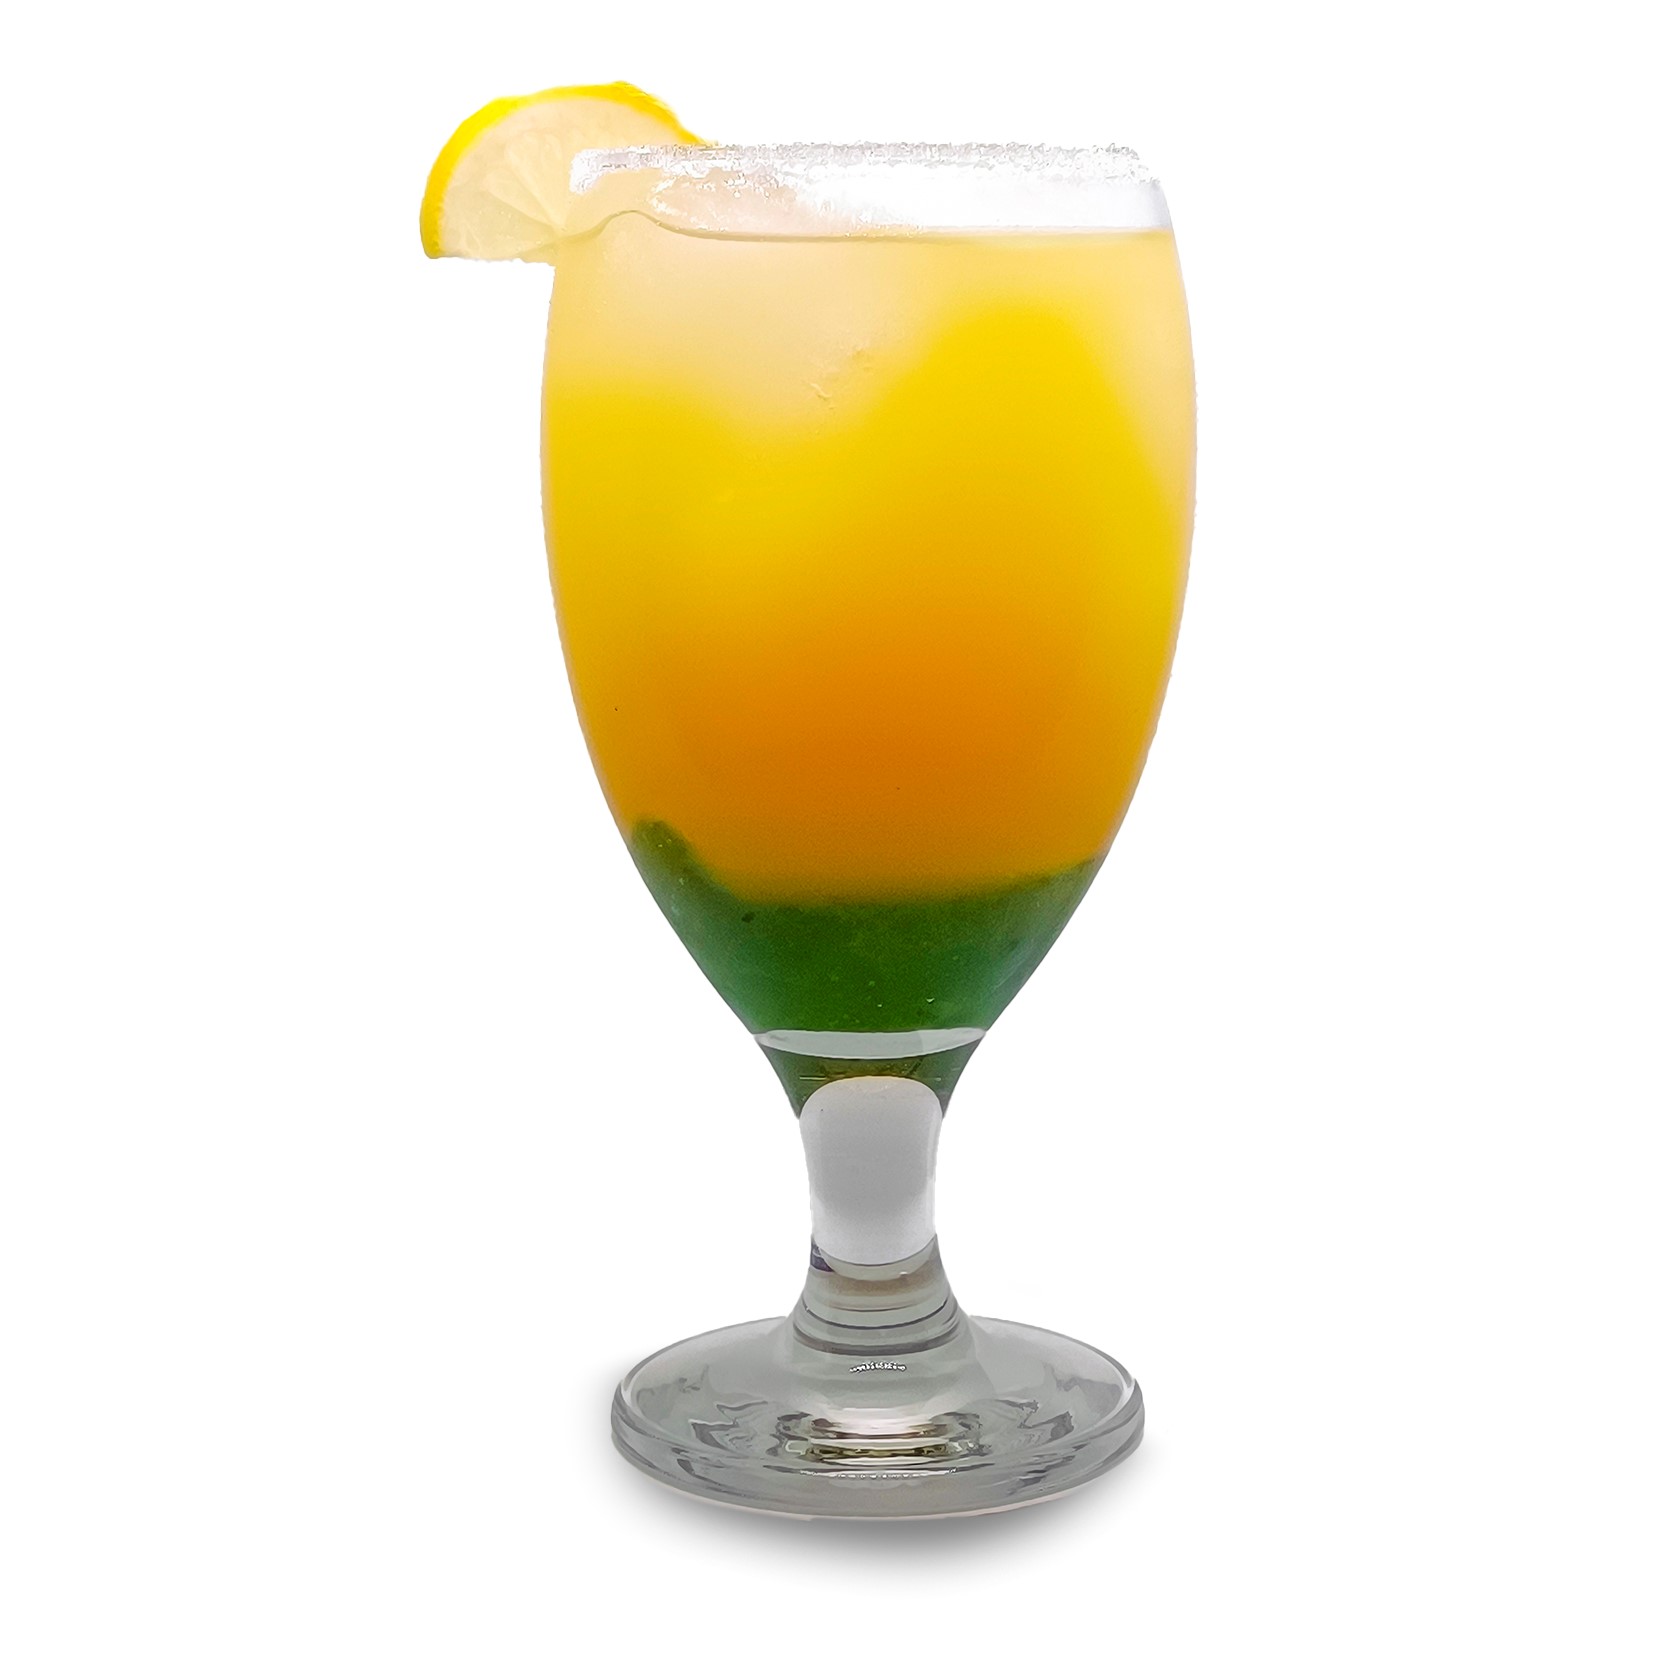 Al Solito Posto (Pineapple, orange, lemon, kiwi juice)